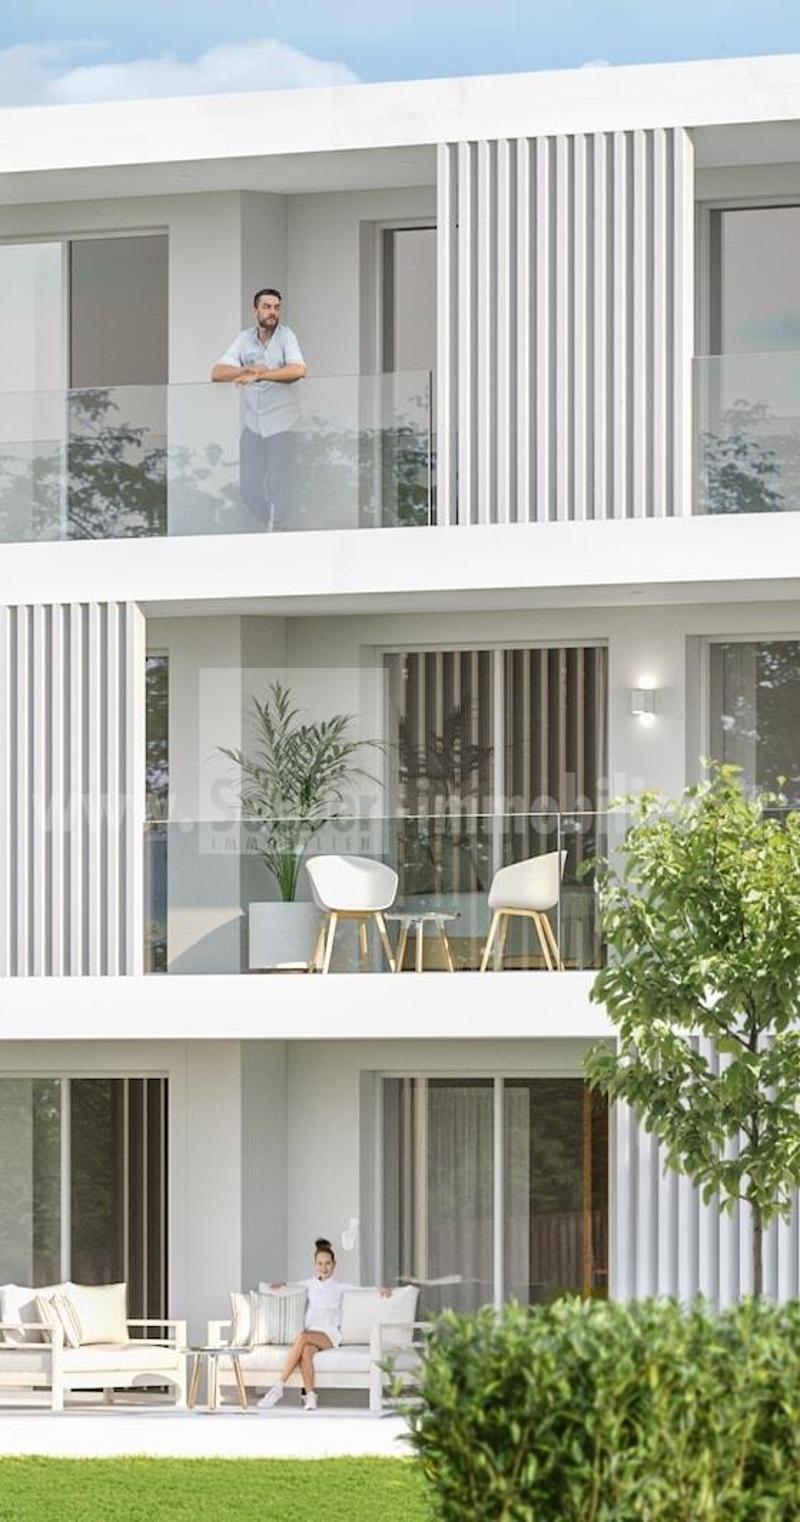 The White Residence: Ihr exklusives Zuhause mit großzügigen Fenstern, modernem Komfort und grüner Oase. Entdecken Sie Ihre Kleine 1-Zimmer-Wohnung im Erdgeschoss – ein Lebensraum voller Freiheit. (1)